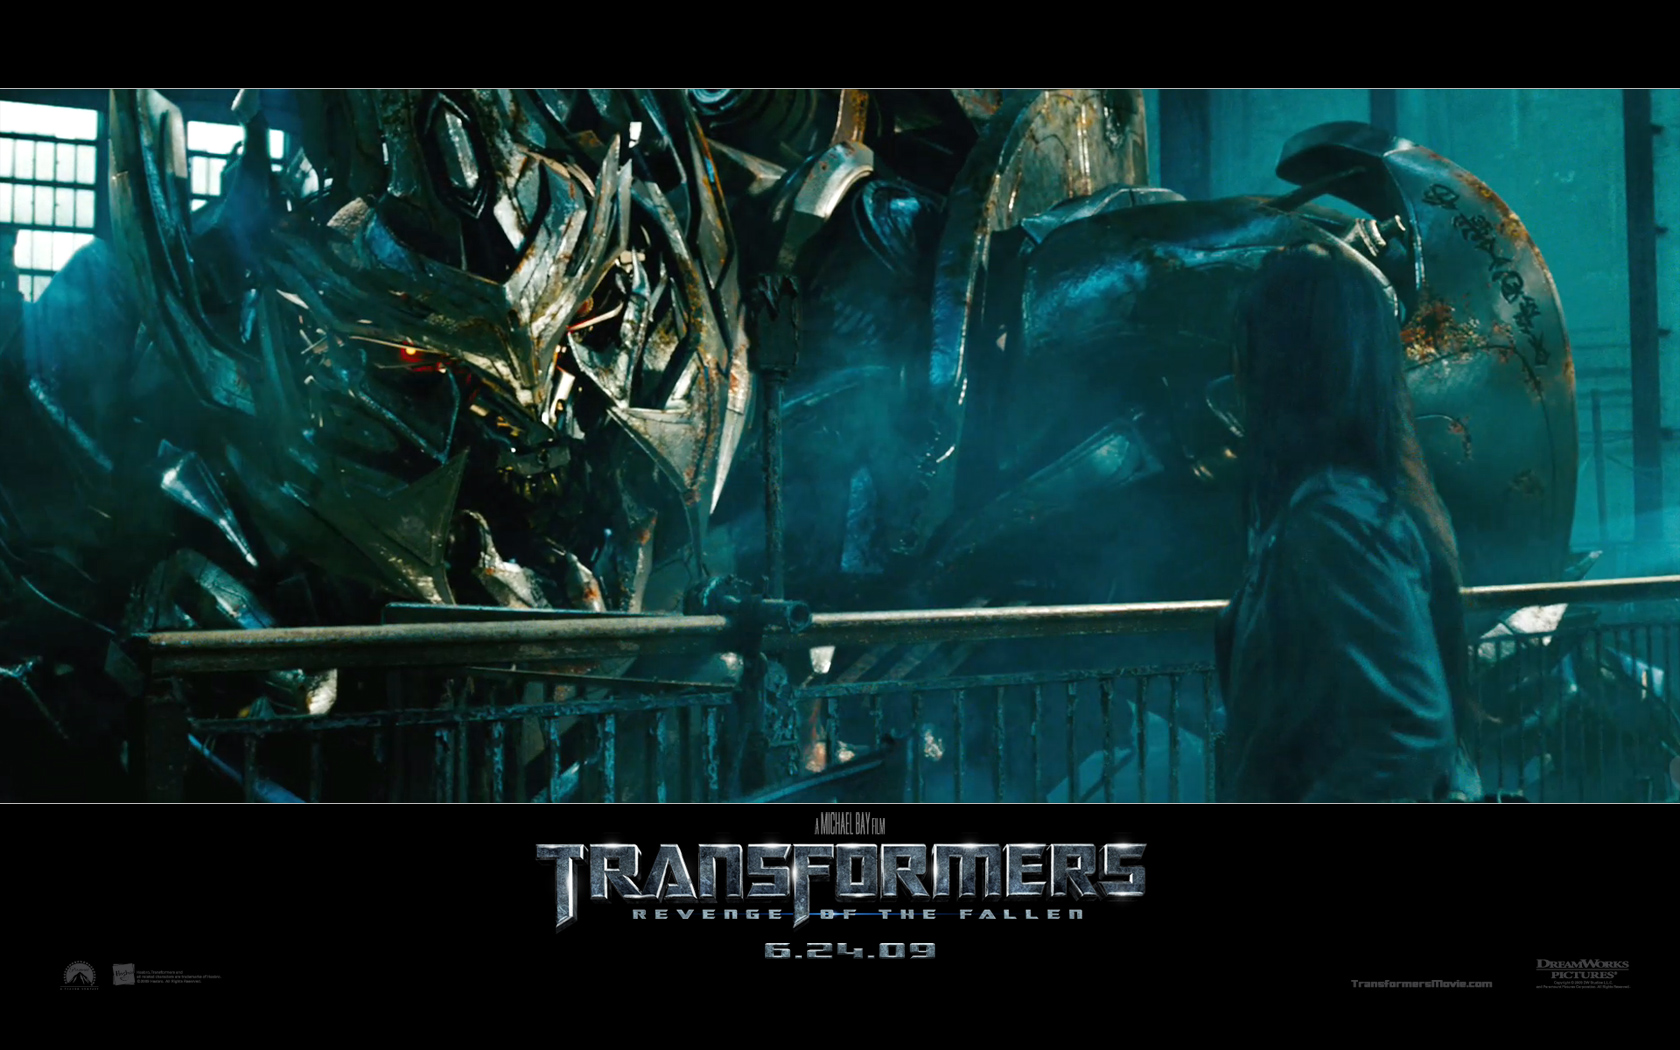 "Transformers: Revenge of the Fallen" desktop wallpaper number 2 (1680 x 1050 pixels)